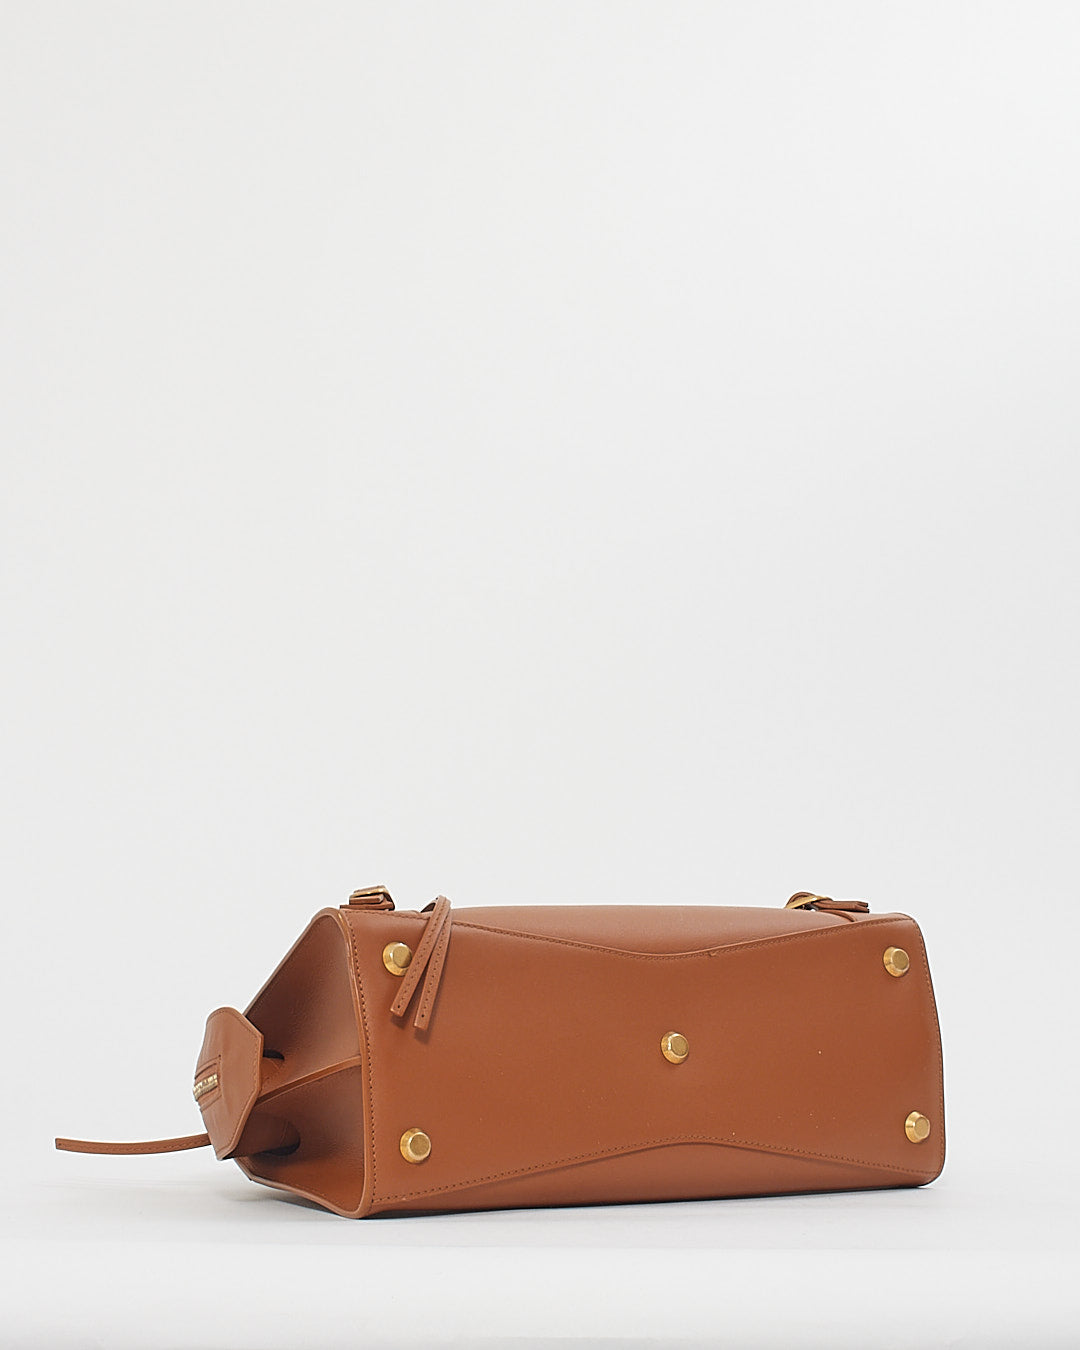 Balenciaga Camel Tan Leather Neo Classic Handbag